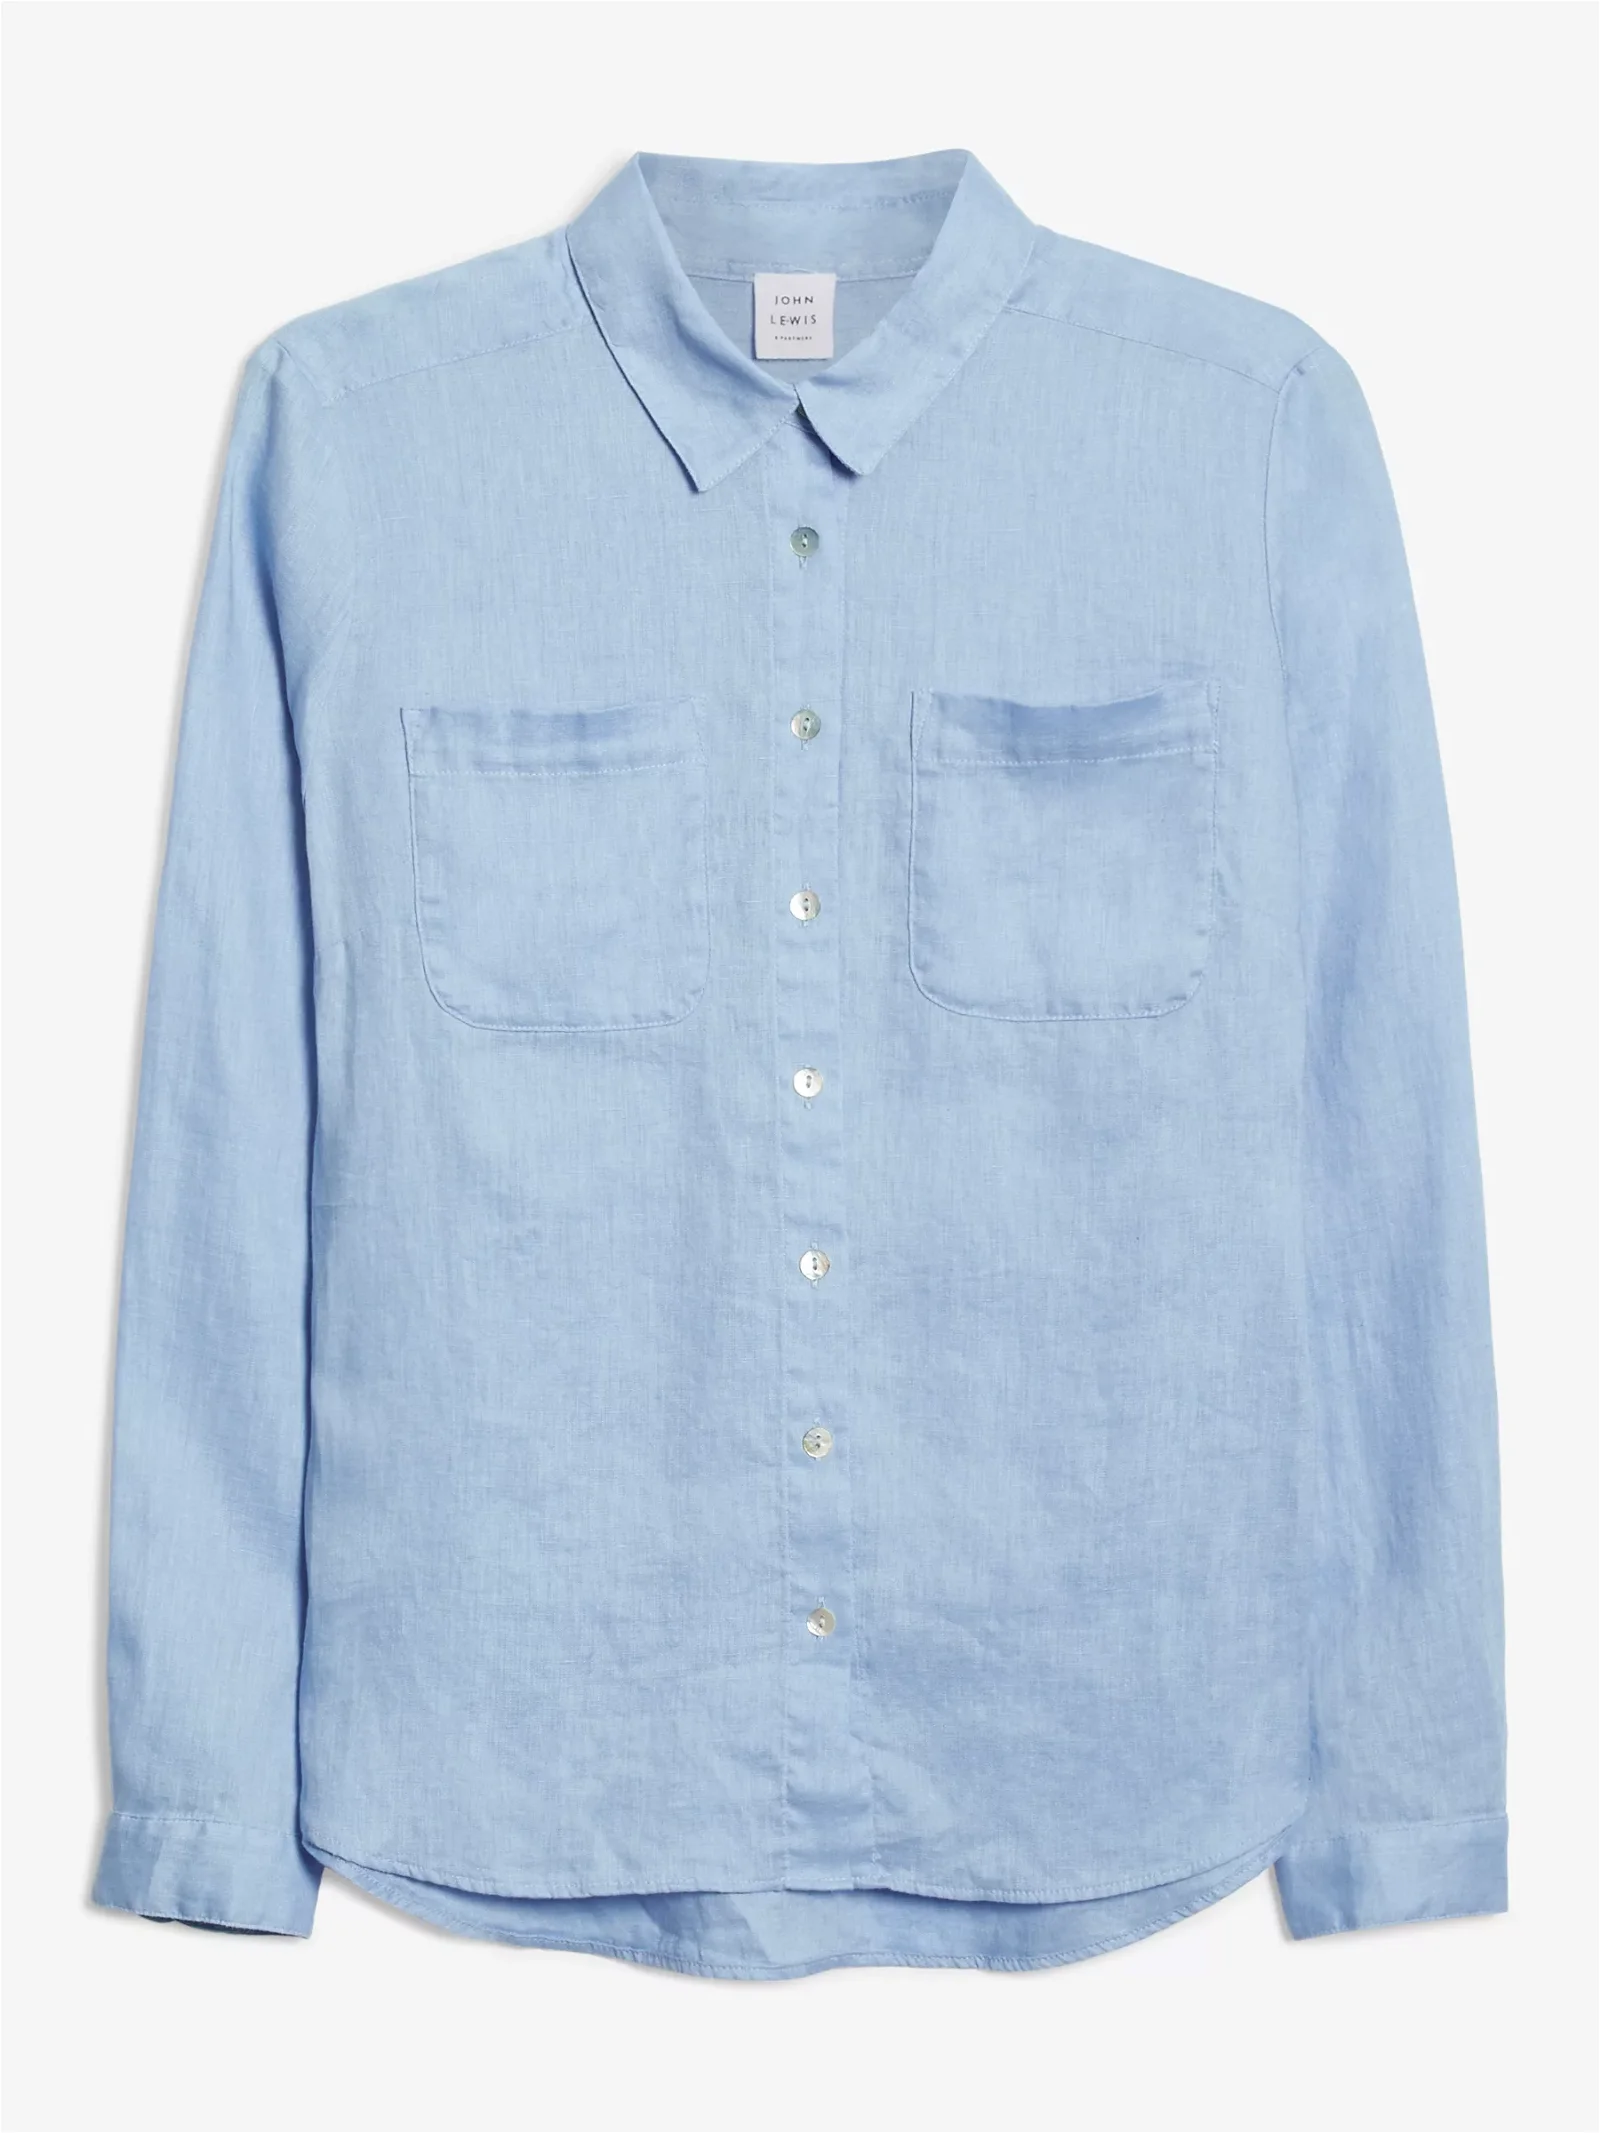 Reiss Campbell Linen Shirt, Blue at John Lewis & Partners